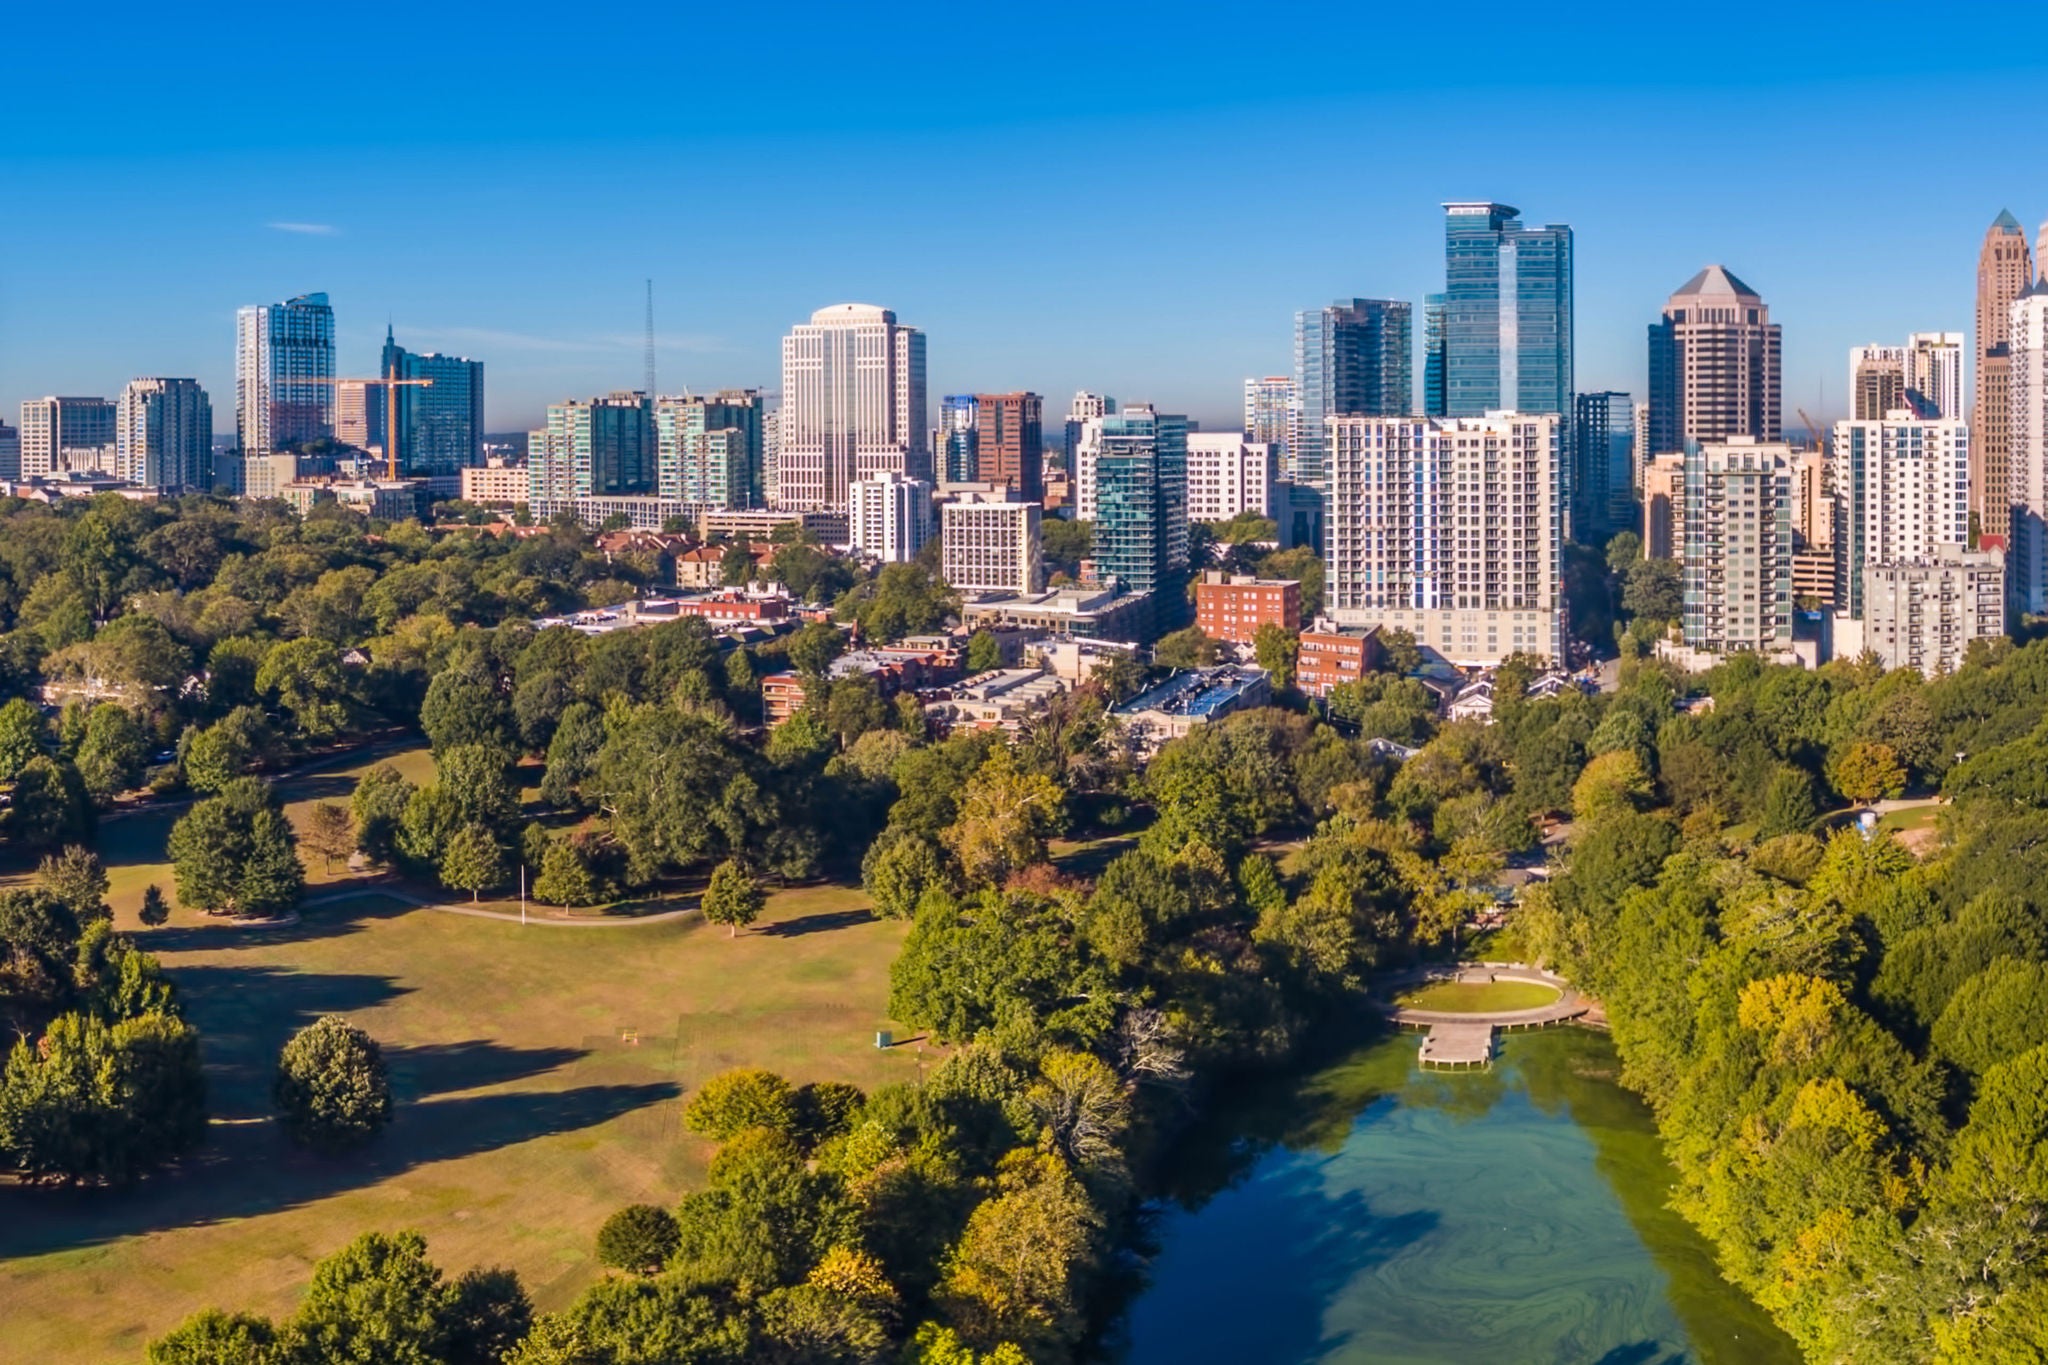 Aerial view of Atlanta